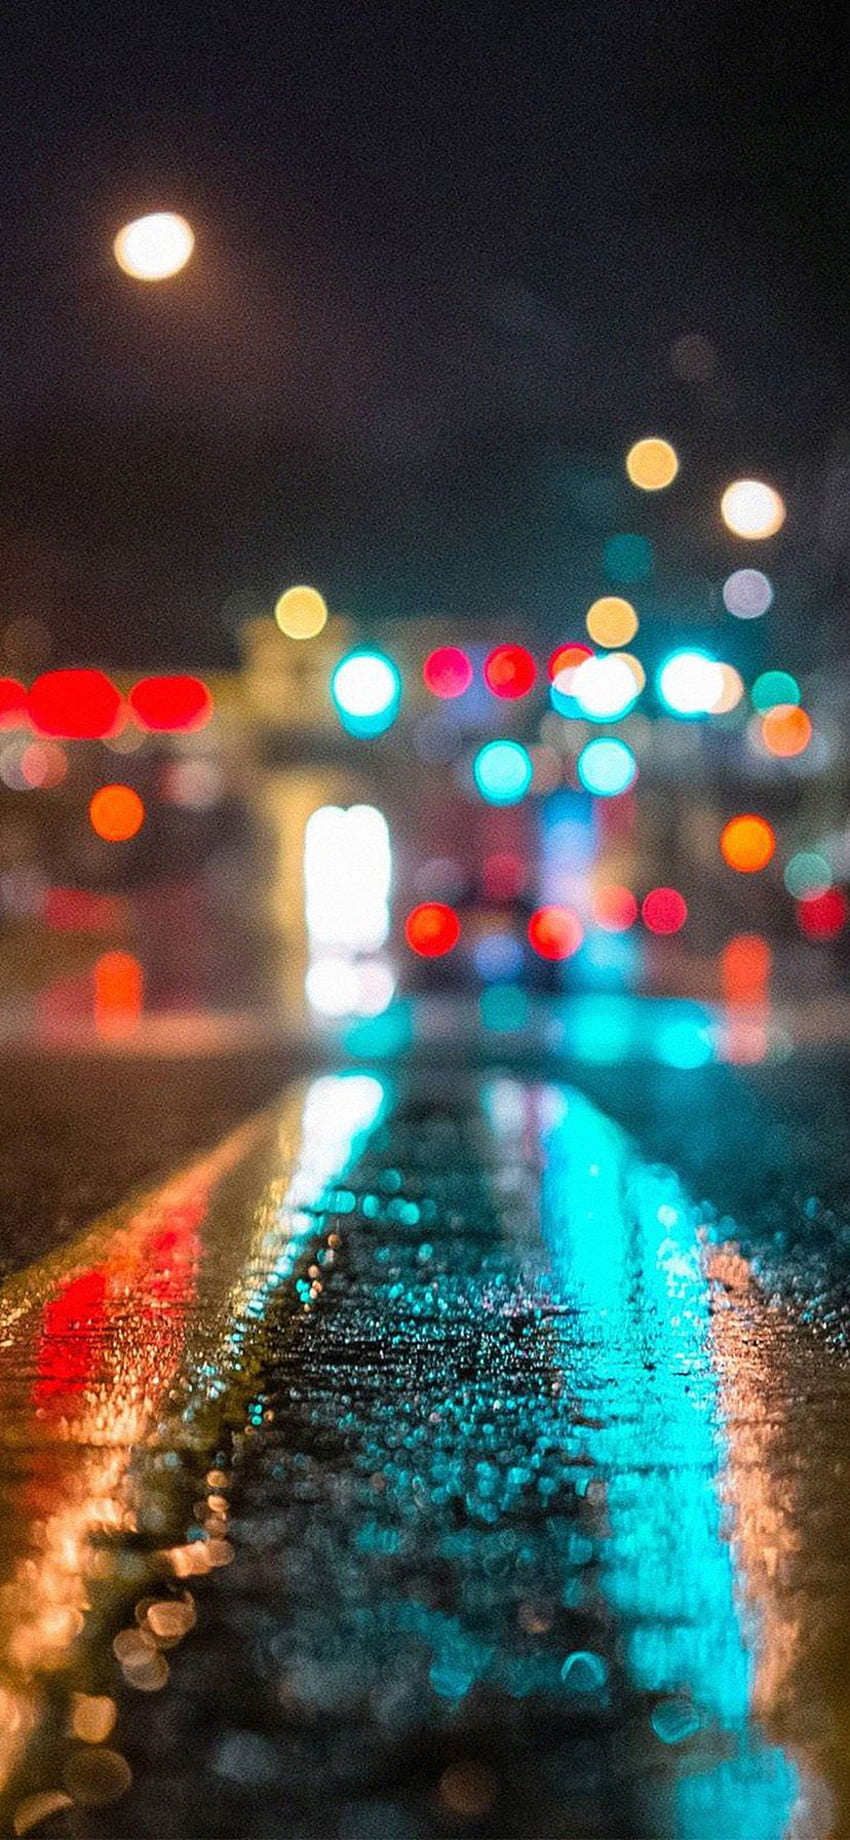 Tận hưởng cảm giác của một buổi tối mưa giữa phố thị với iPhone Xr. Quang cảnh ánh đèn thành phố nền chân dung HD sẽ giúp cho bức ảnh trở nên sống động và ấn tượng hơn bao giờ hết. Đừng bỏ lỡ cơ hội để tạo ra những bức ảnh nghệ thuật với iPhone Xr của bạn.